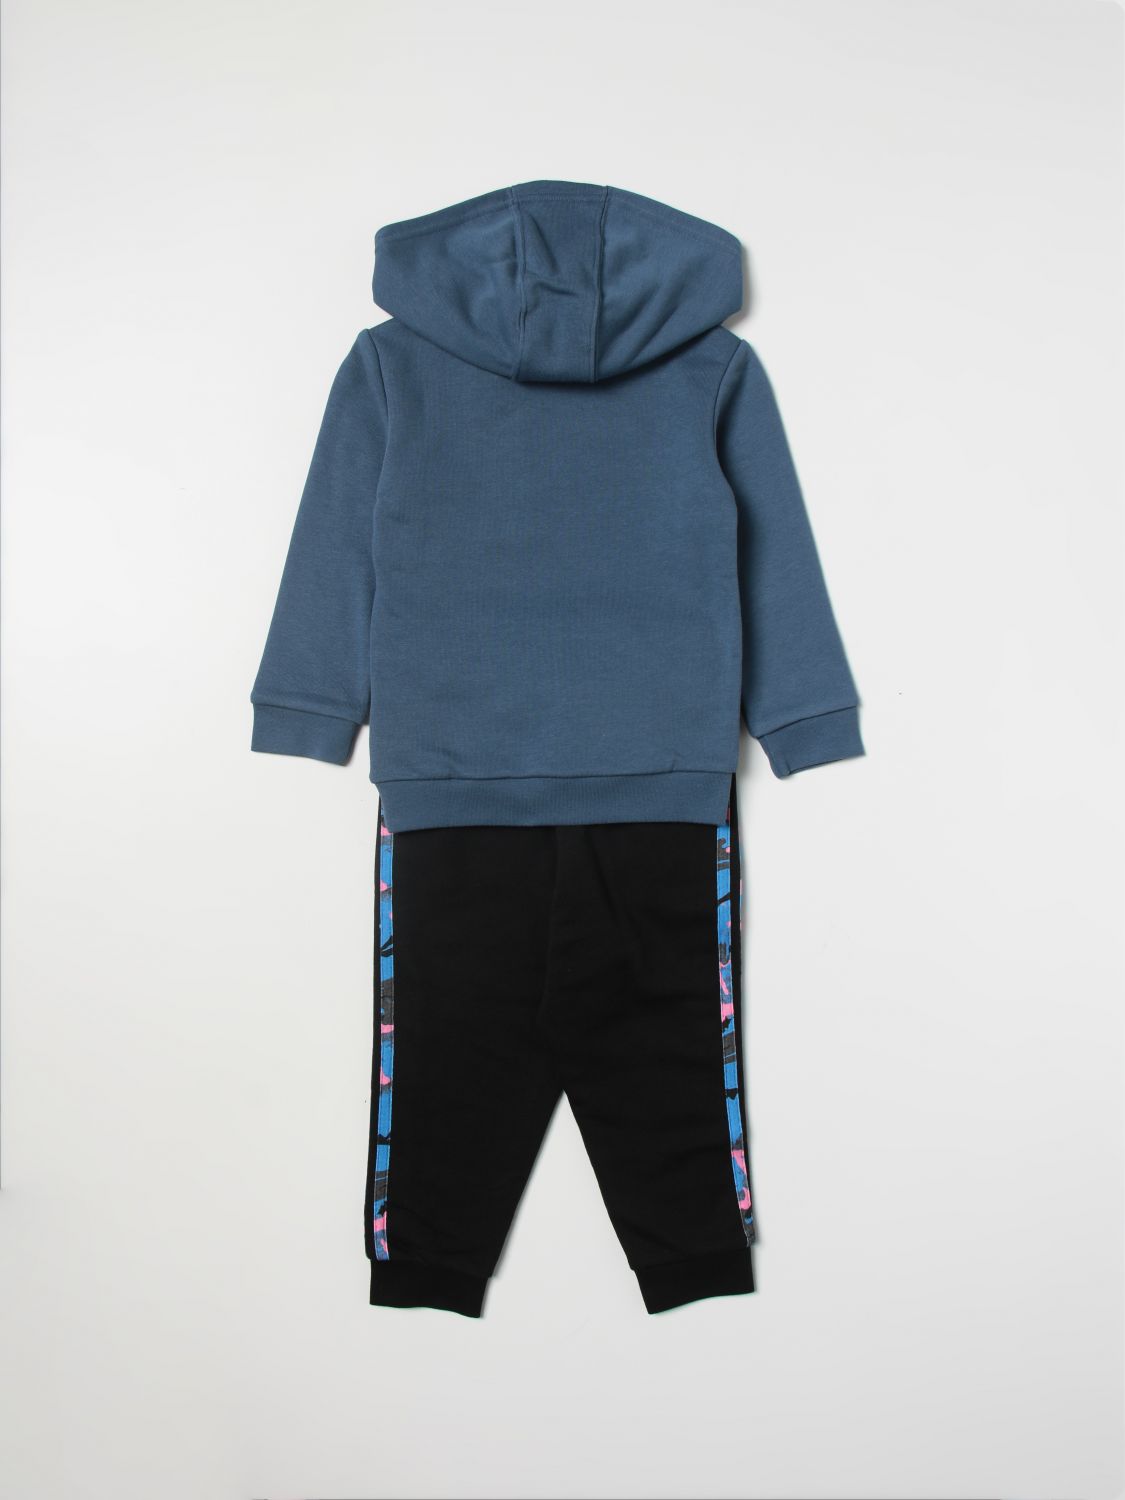 ADIDAS ORIGINALS: clothing set for boys - Blue | Adidas Originals ...